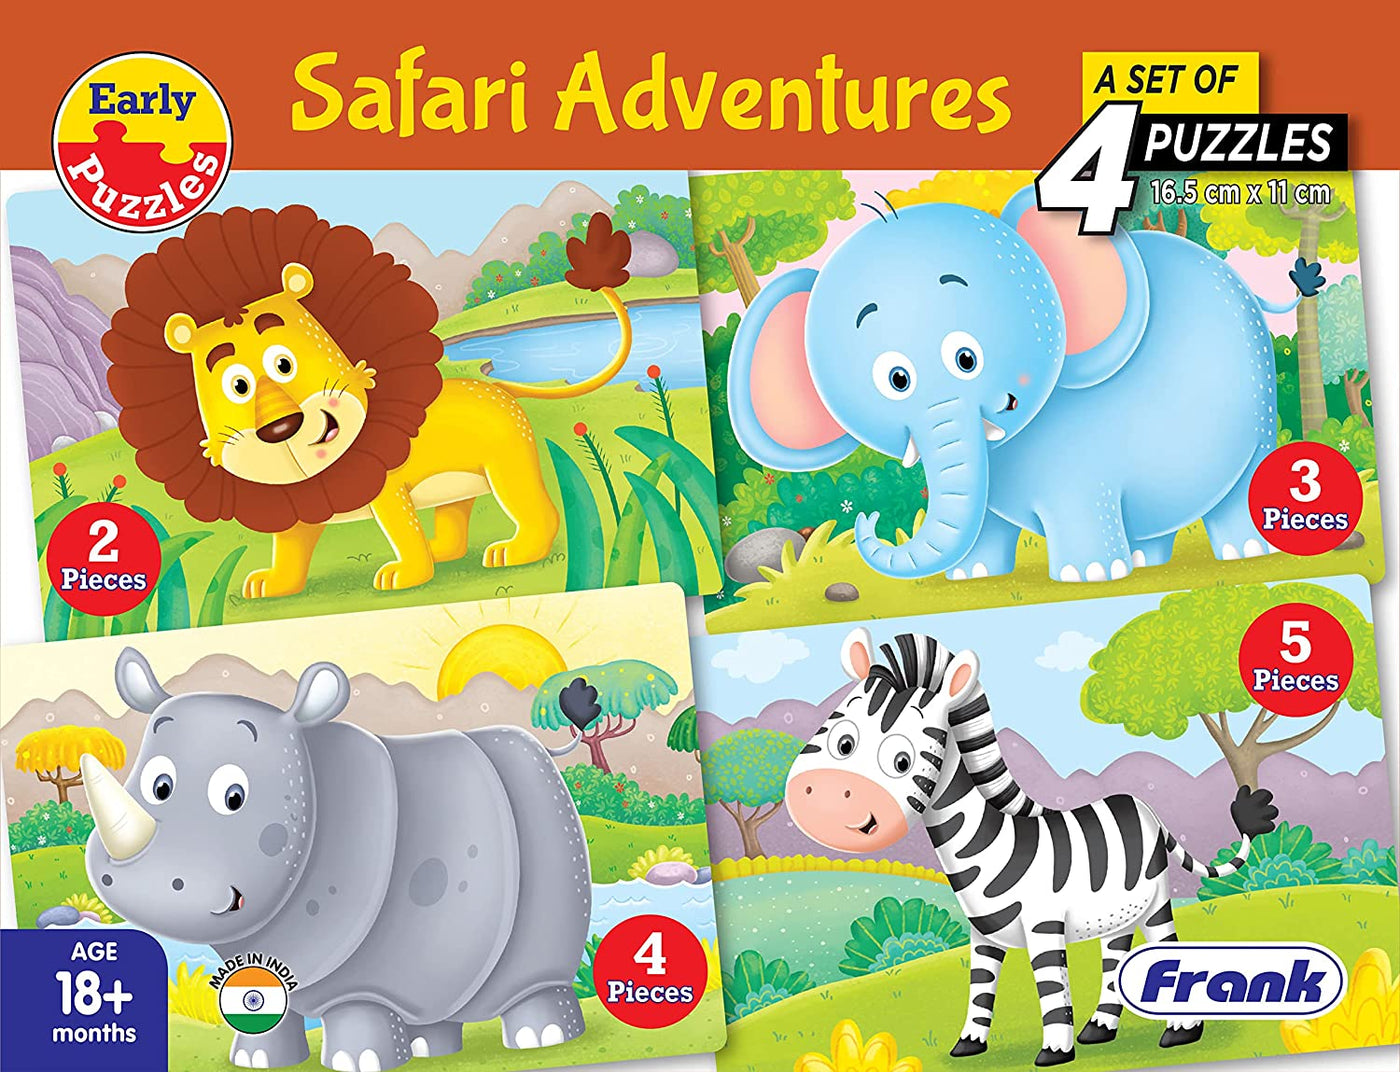 Safari Adventures - 4 Puzzle Set | Frank